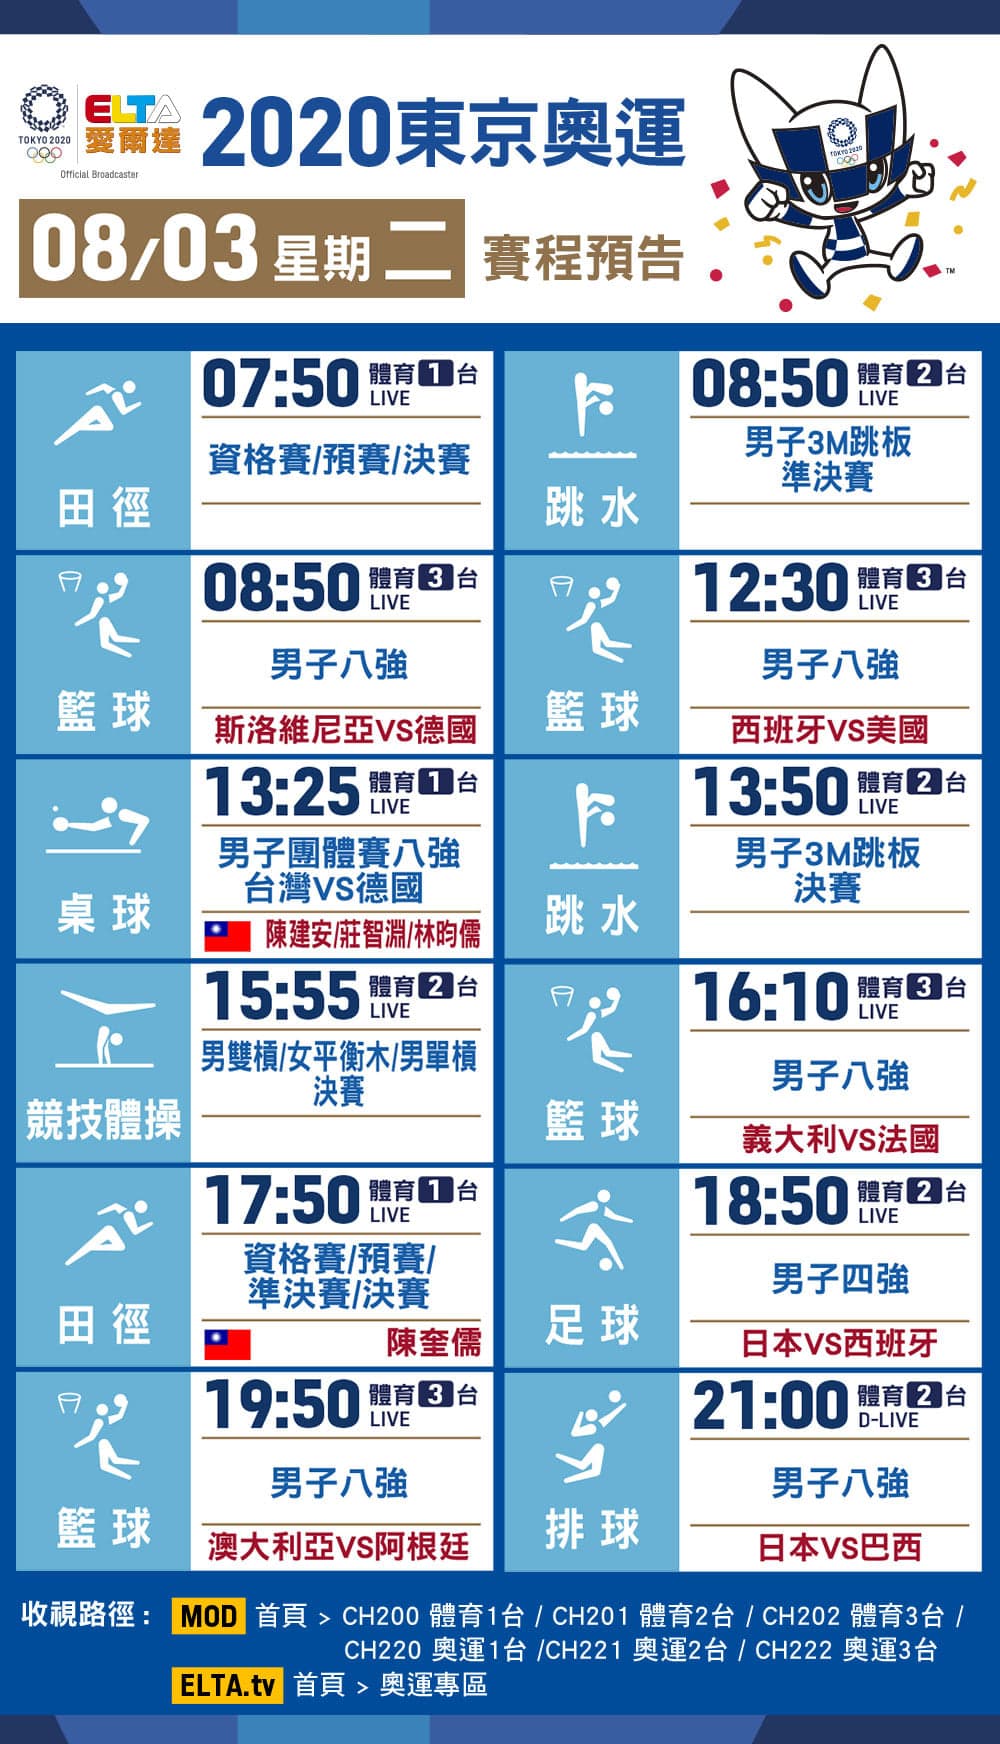 【8/3奧運直播賽程表】中華台北奧運轉播賽程、直播時間總整理